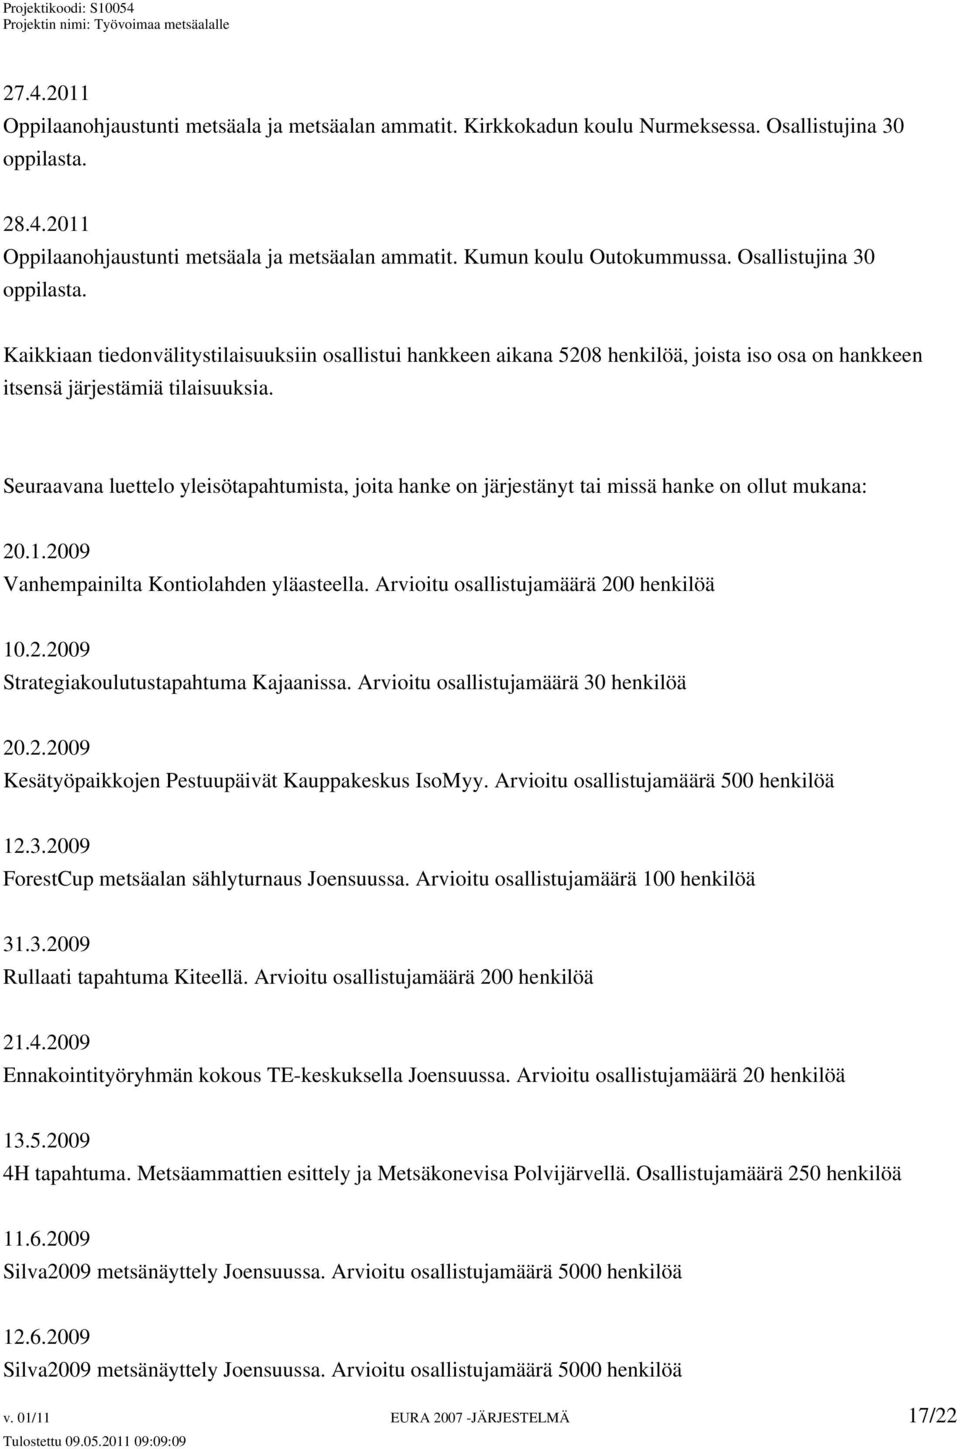 Seuraavana luettelo yleisötapahtumista, joita hanke on järjestänyt tai missä hanke on ollut mukana: 20.1.2009 Vanhempainilta Kontiolahden yläasteella. Arvioitu osallistujamäärä 200 henkilöä 10.2.2009 Strategiakoulutustapahtuma Kajaanissa.